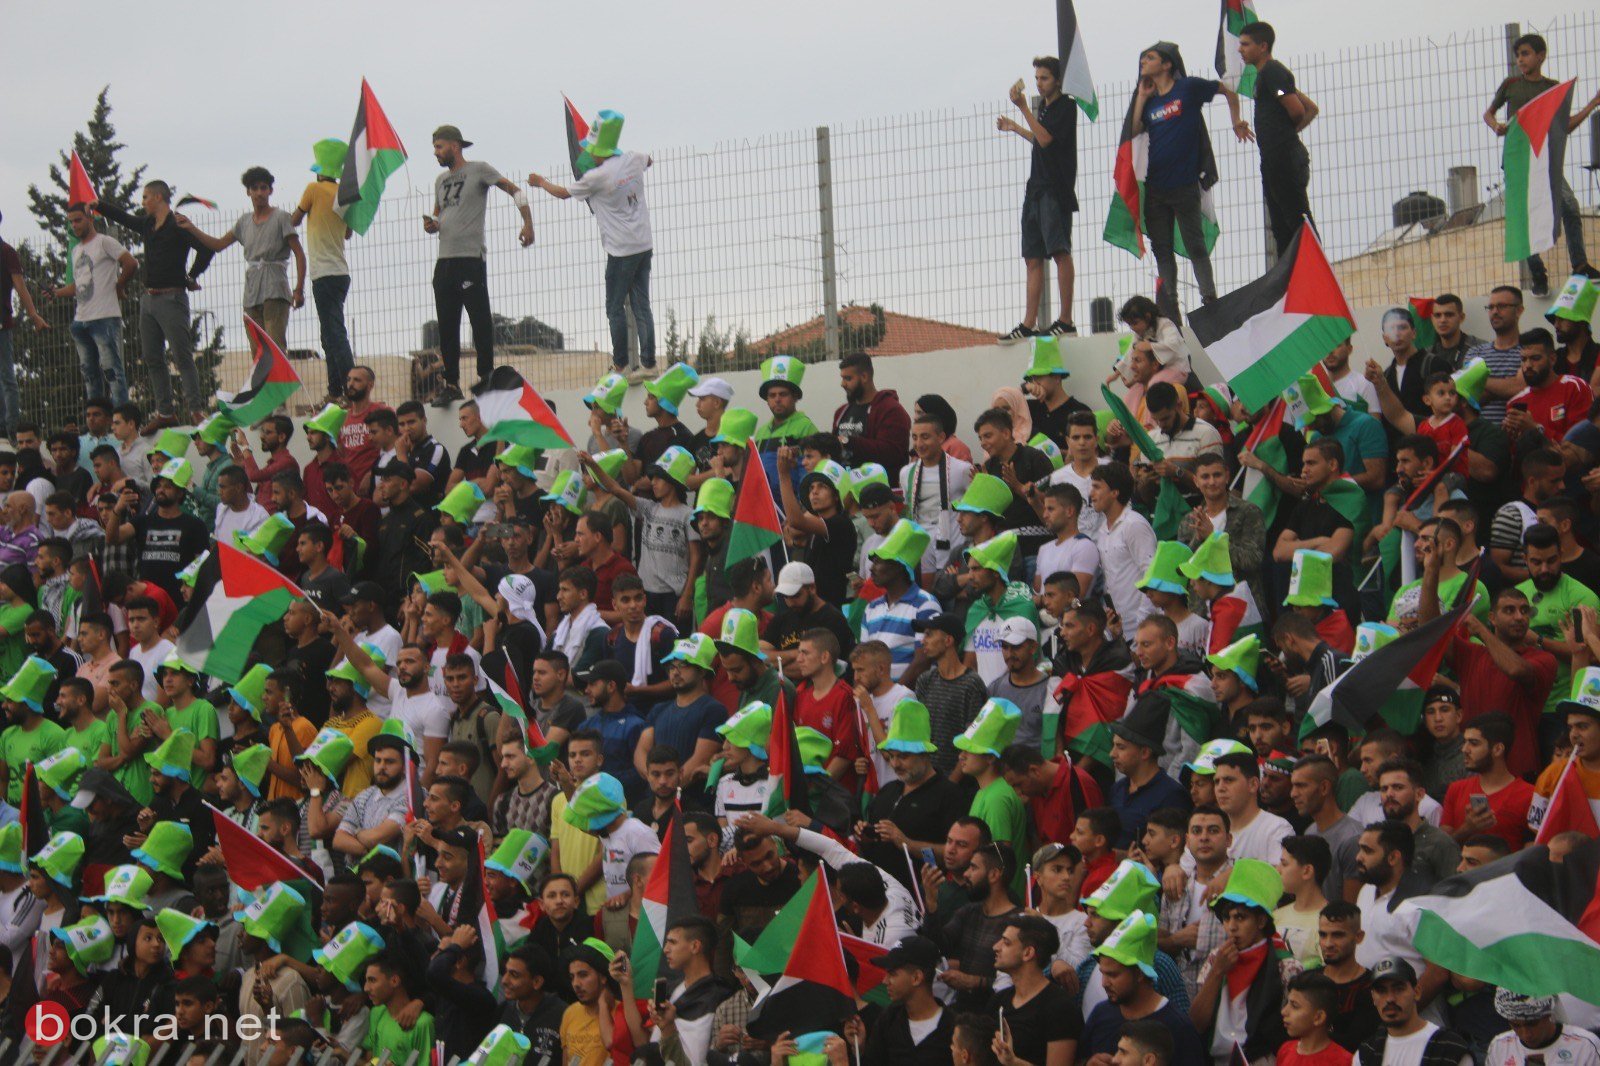 صور اضافية من مباراة فلسطين والسعودية-4